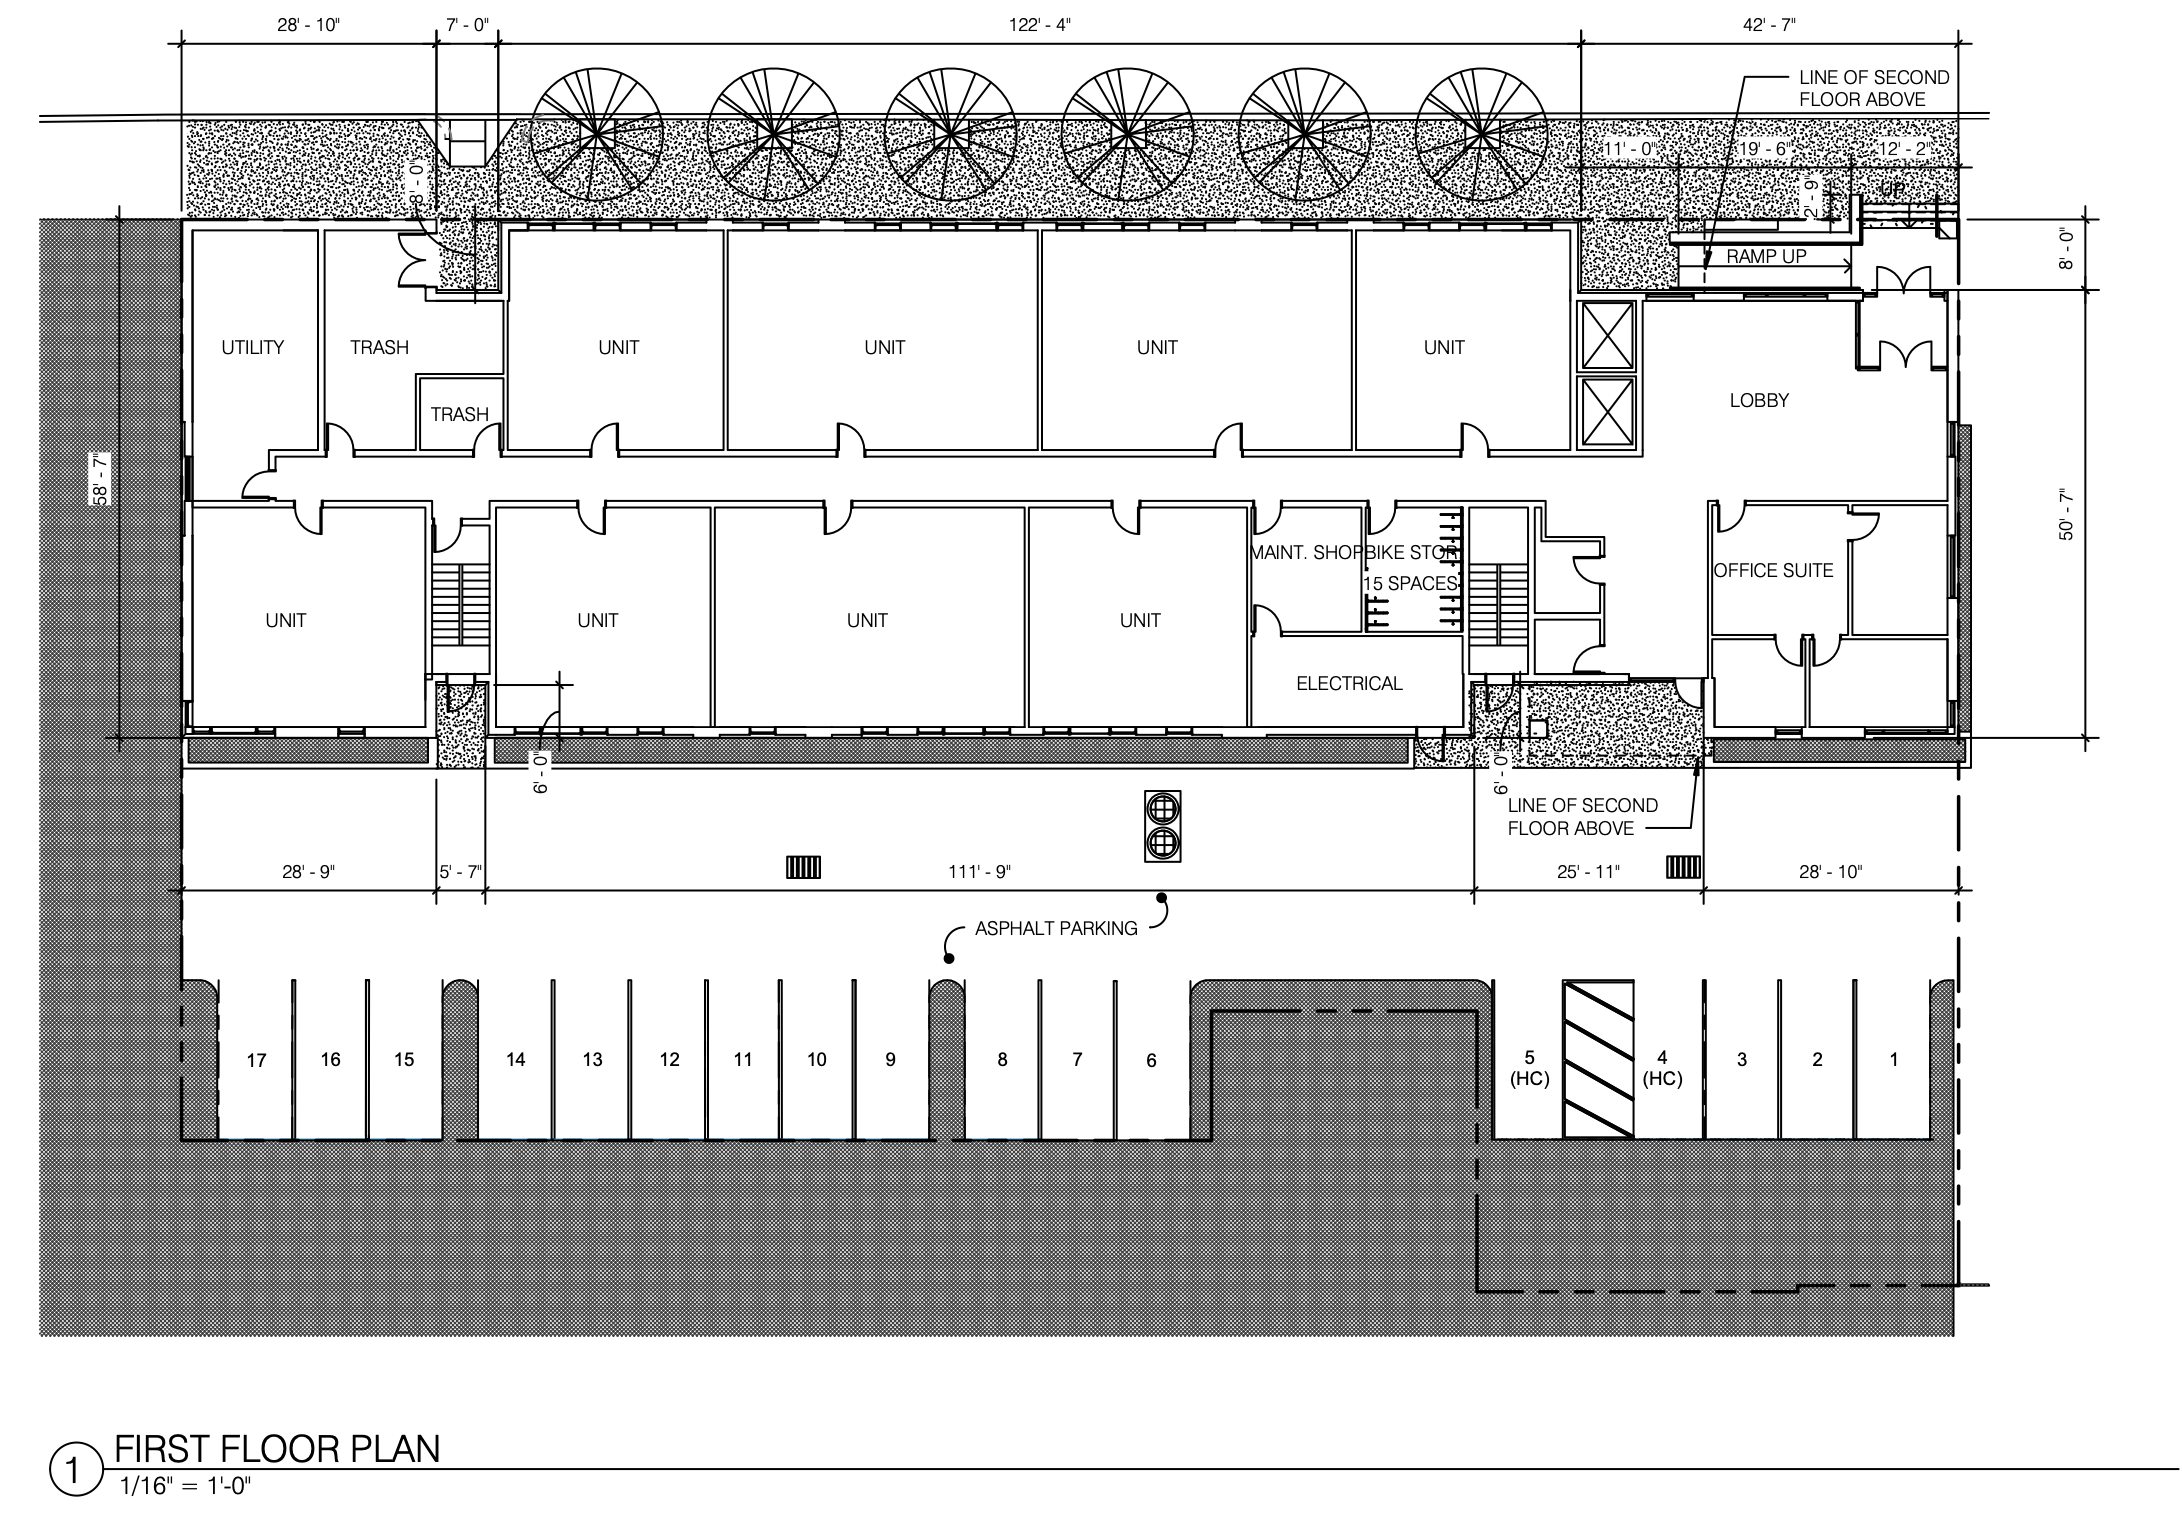 2721 Ruth Street First Floor Plan